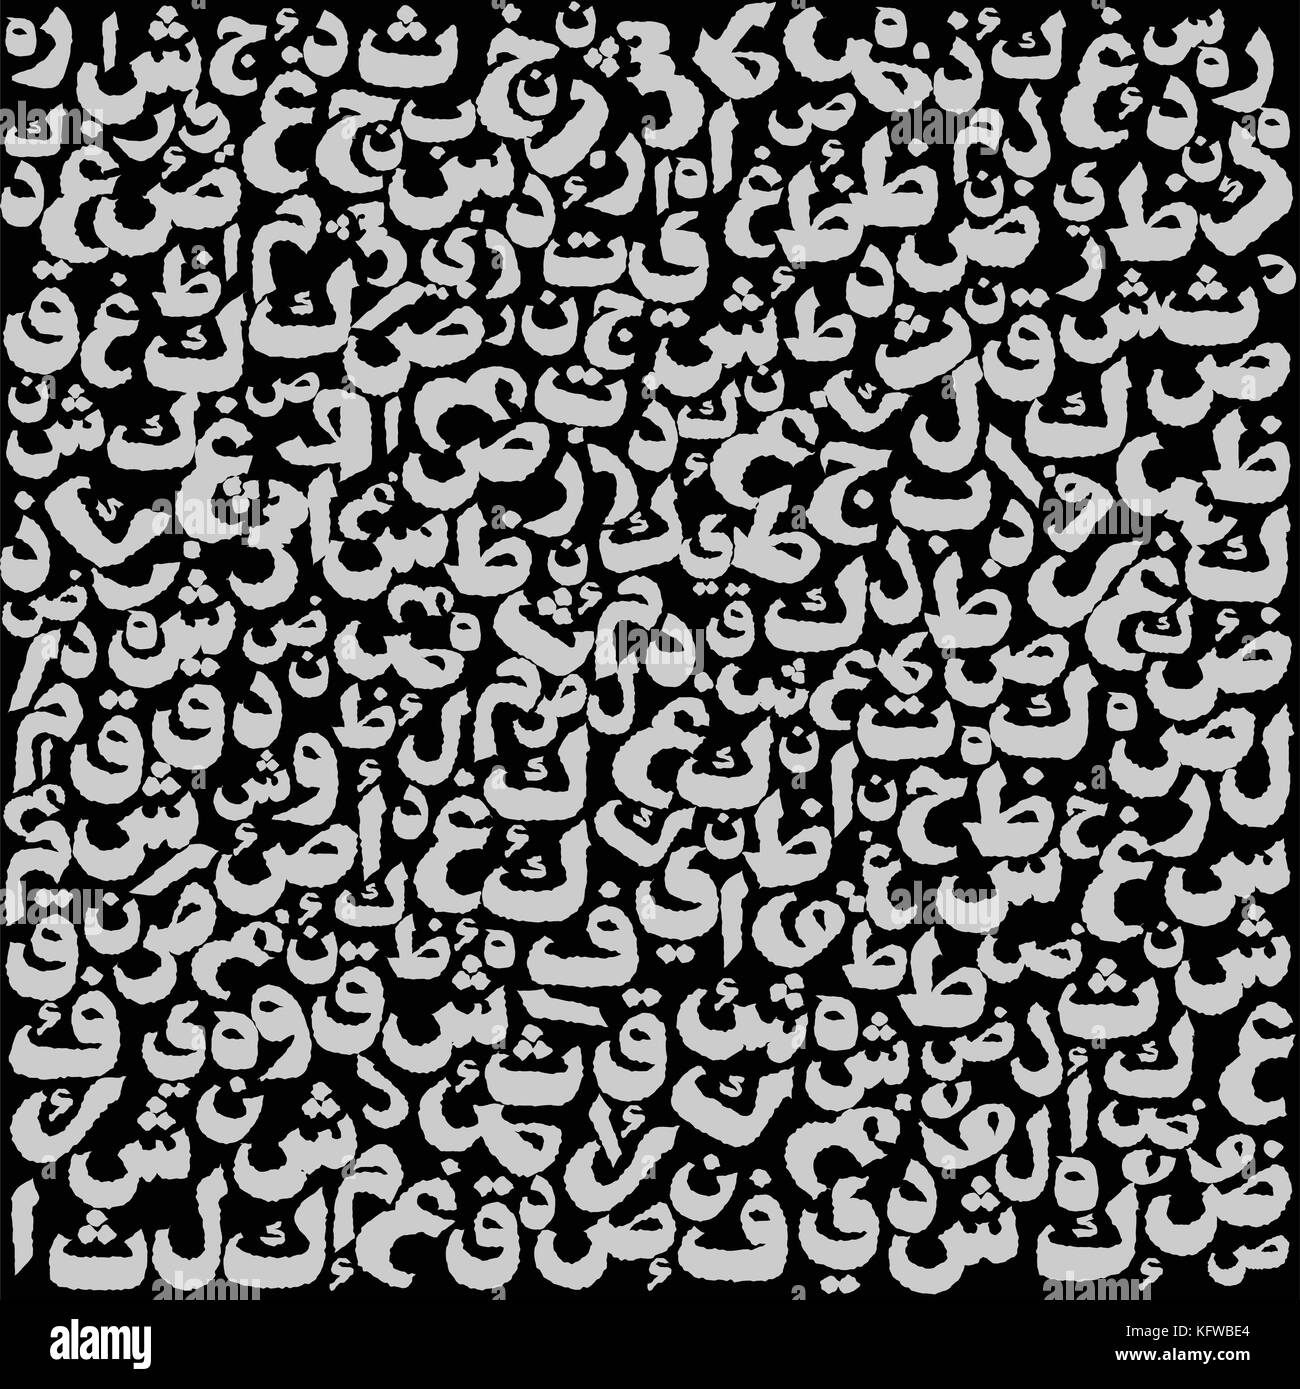 Modèle composé de lettres arabes, lettres arabes avec aucune signification particulière.-colorés sur fond noir fond vecteur illustration. Illustration de Vecteur